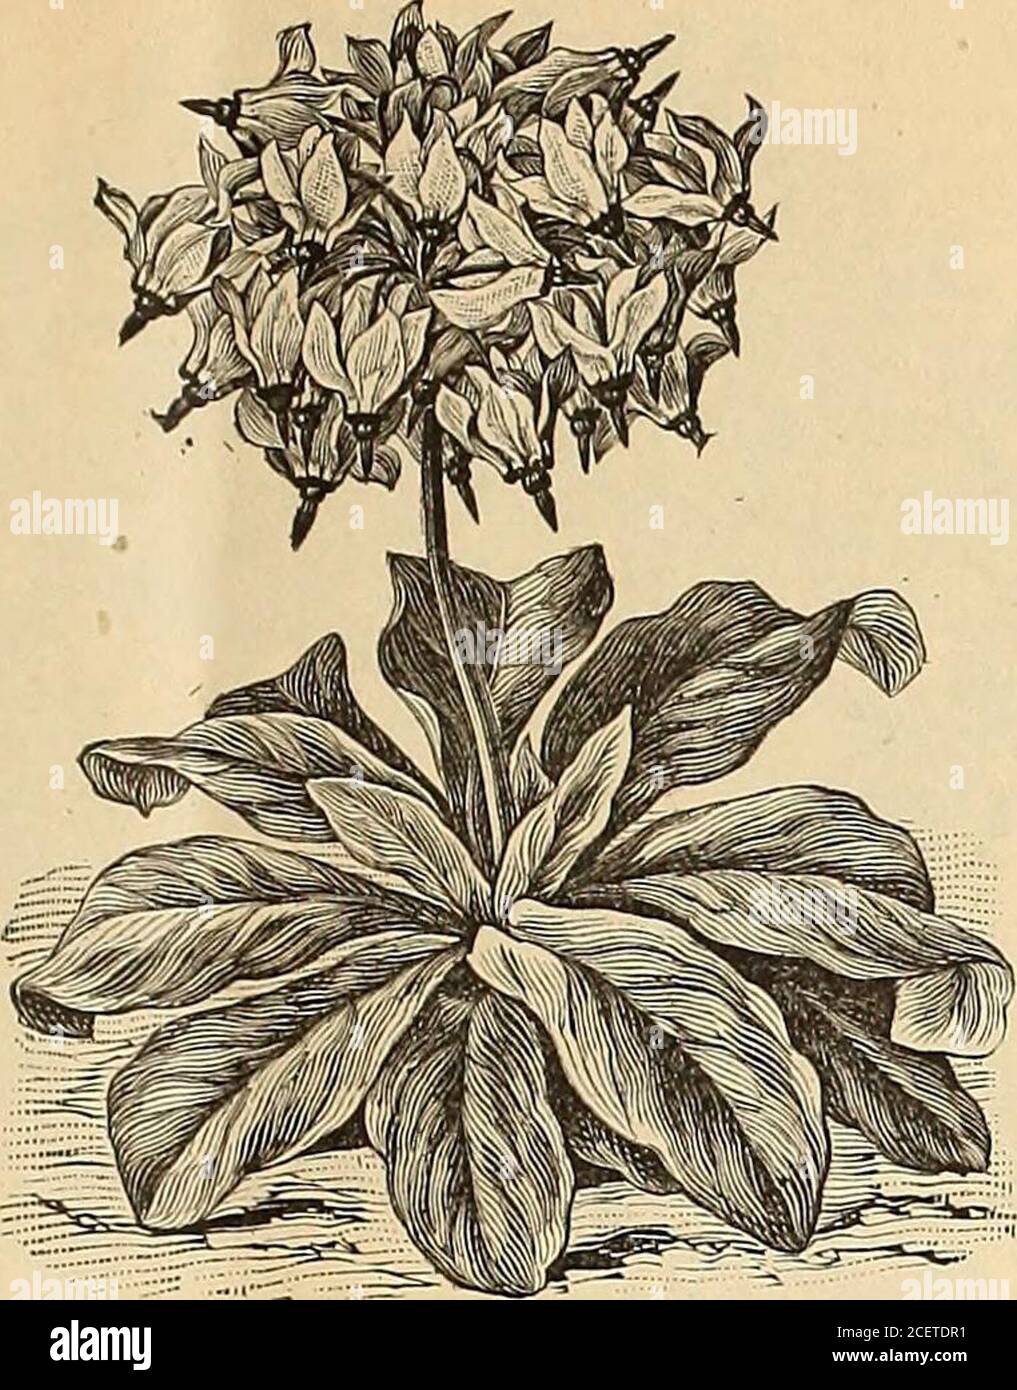 Grupos de flores moradas fotografías e imágenes de alta resolución - Página  6 - Alamy